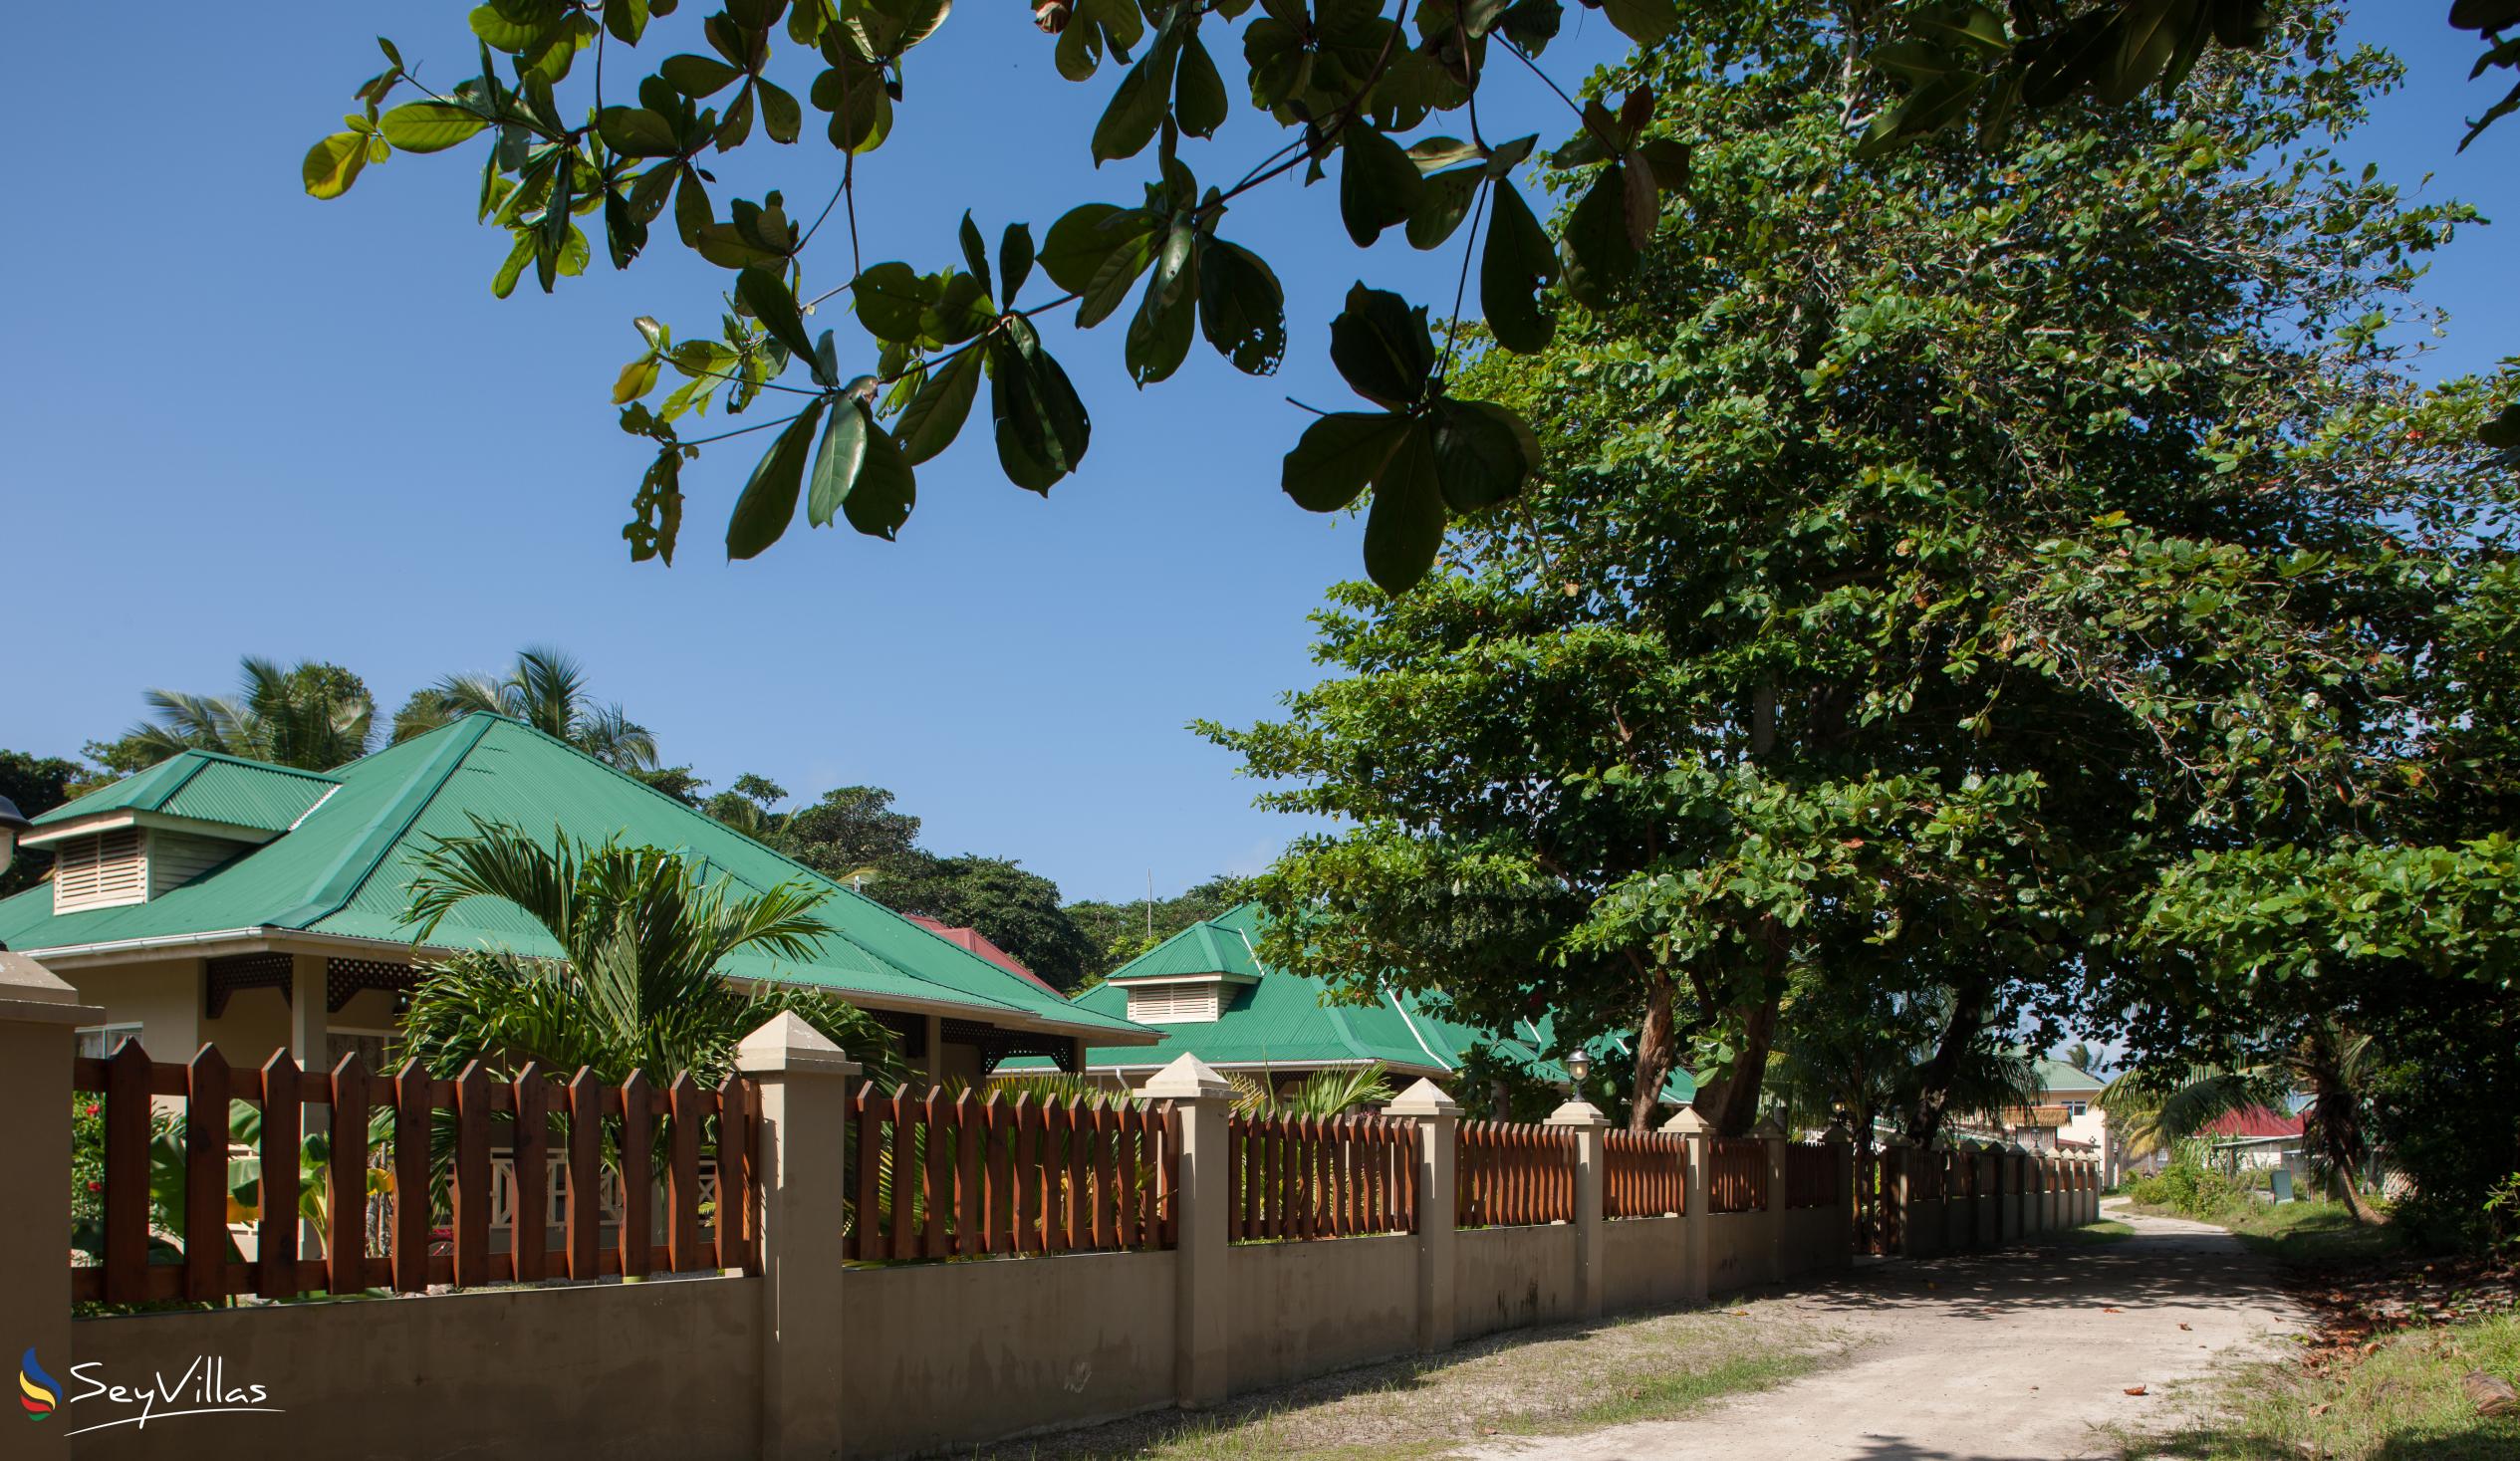 Photo 83: Hostellerie La Digue - Outdoor area - La Digue (Seychelles)